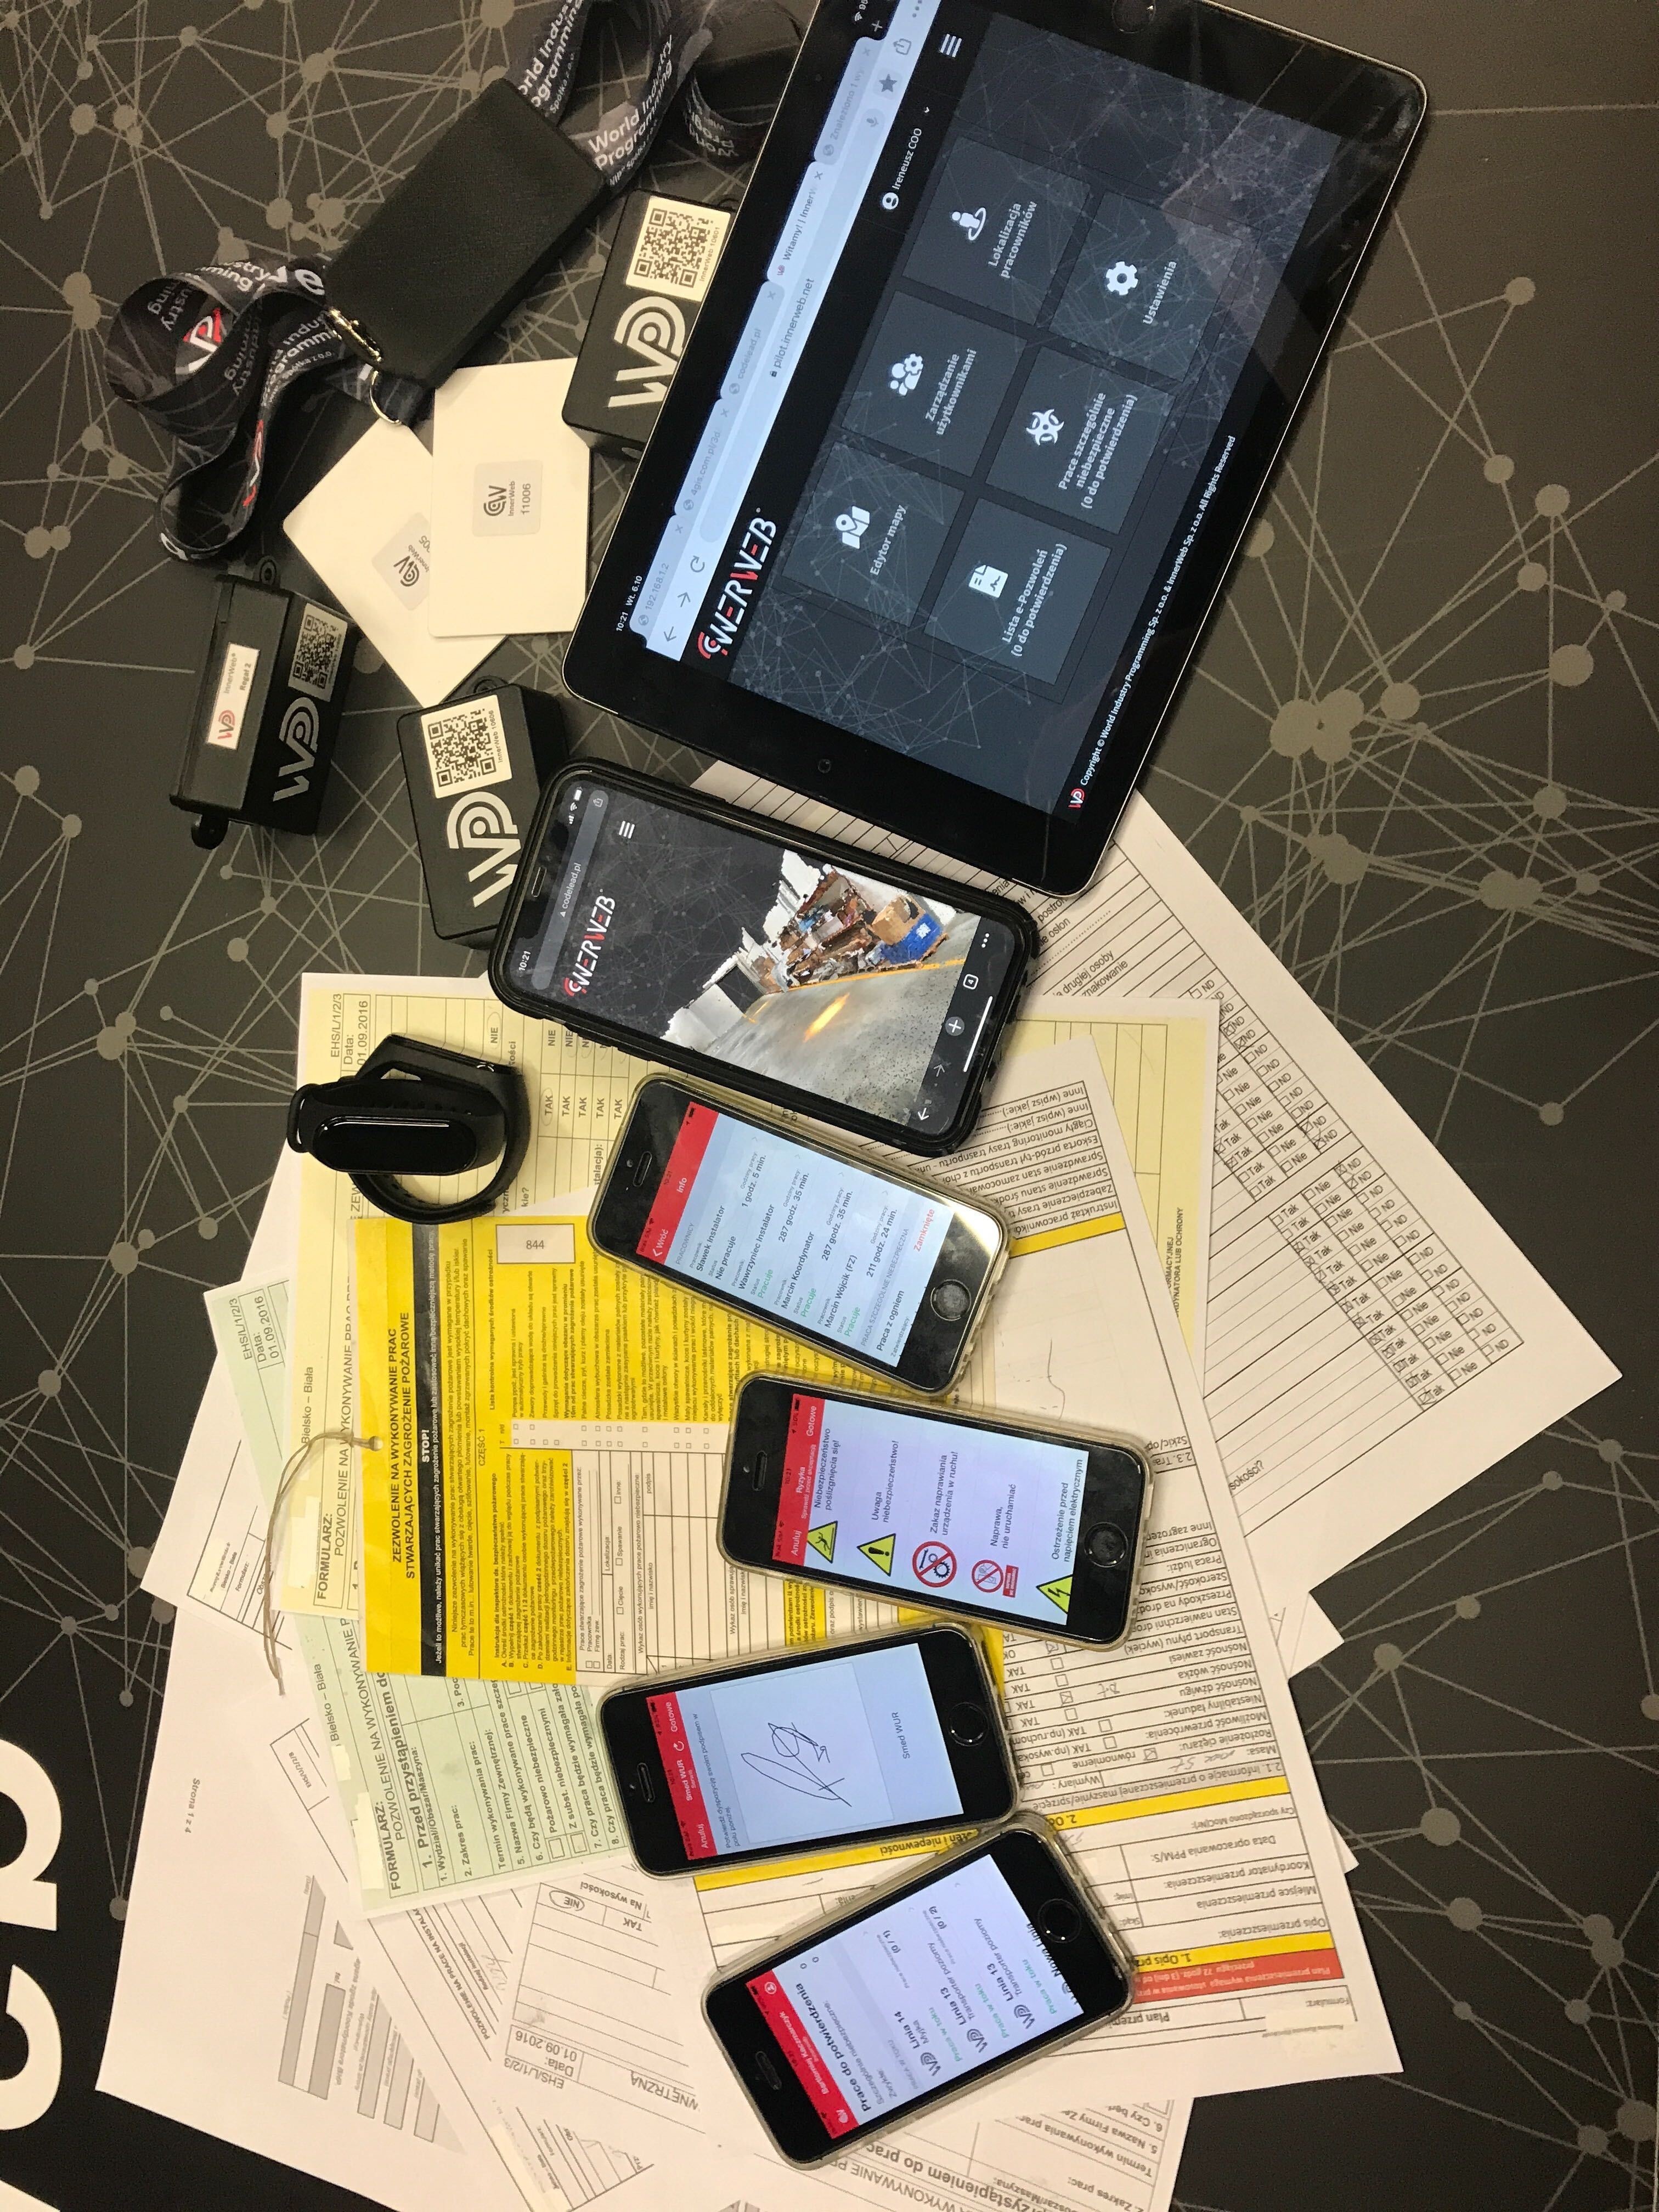 Na stole z dokumentami leżą urządzenia mobilne prezentujące aplikację InnerWeb